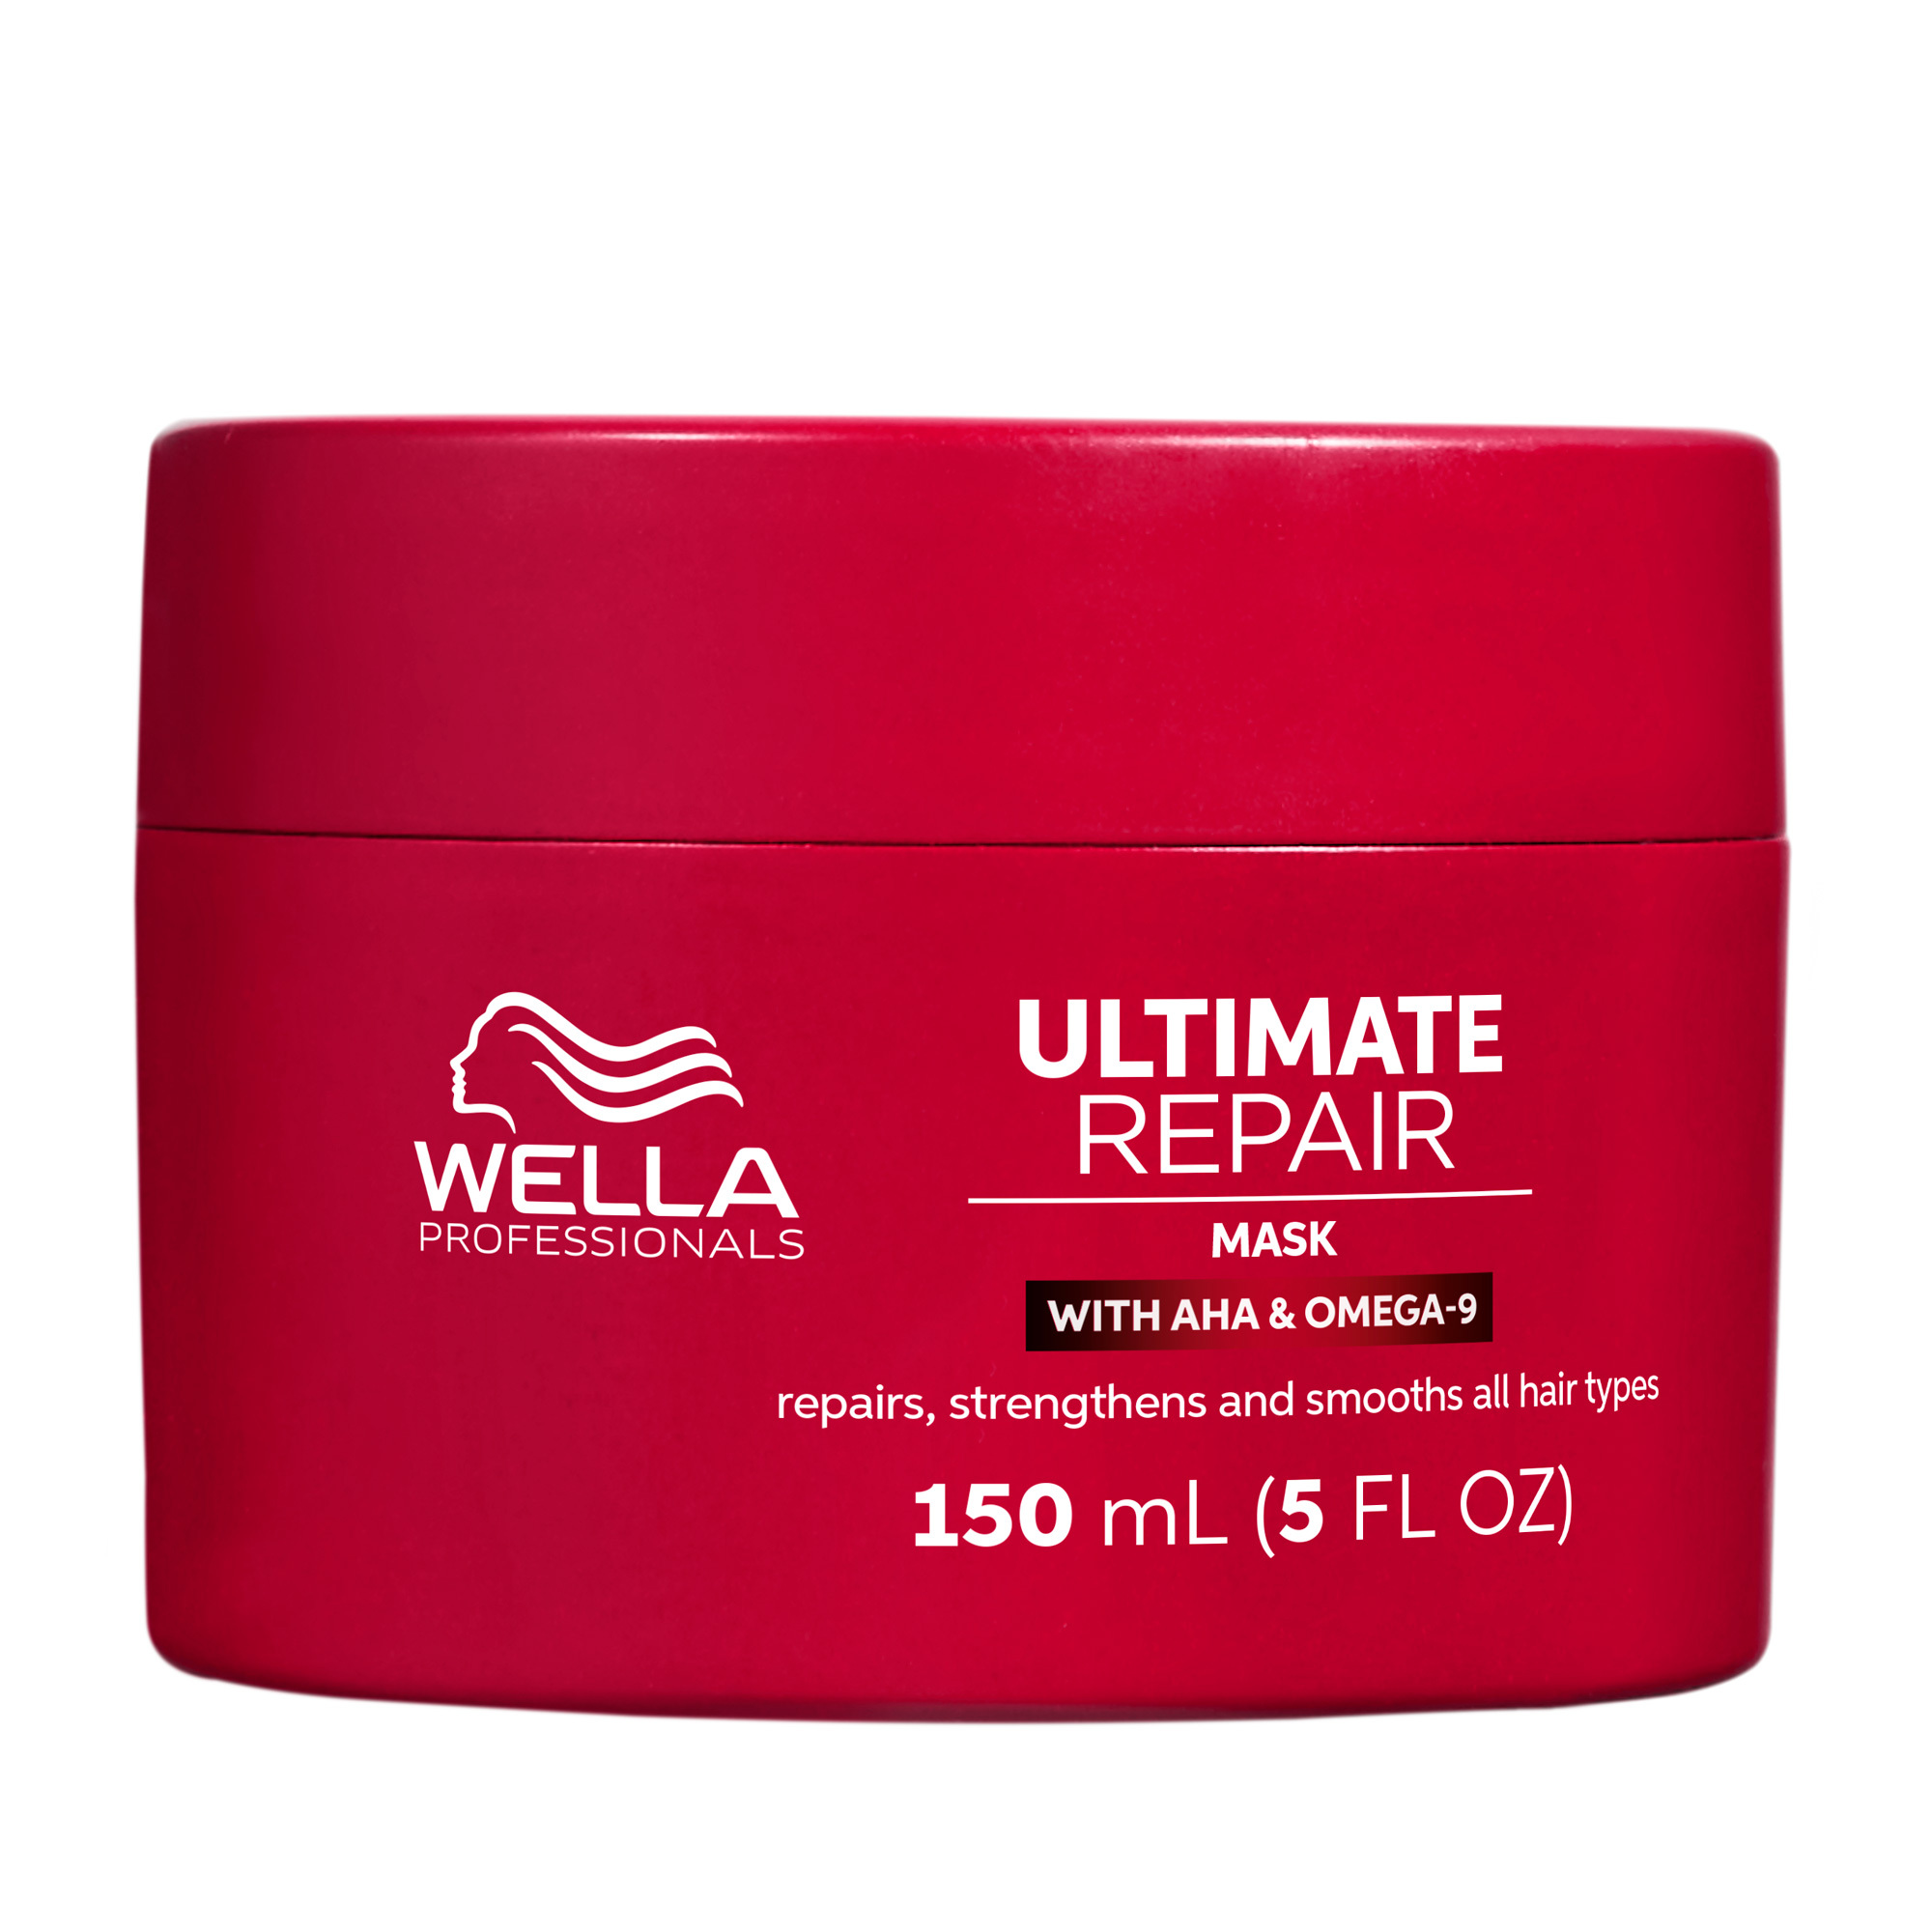 Wella Ultimate Repair Mask 5.07oz